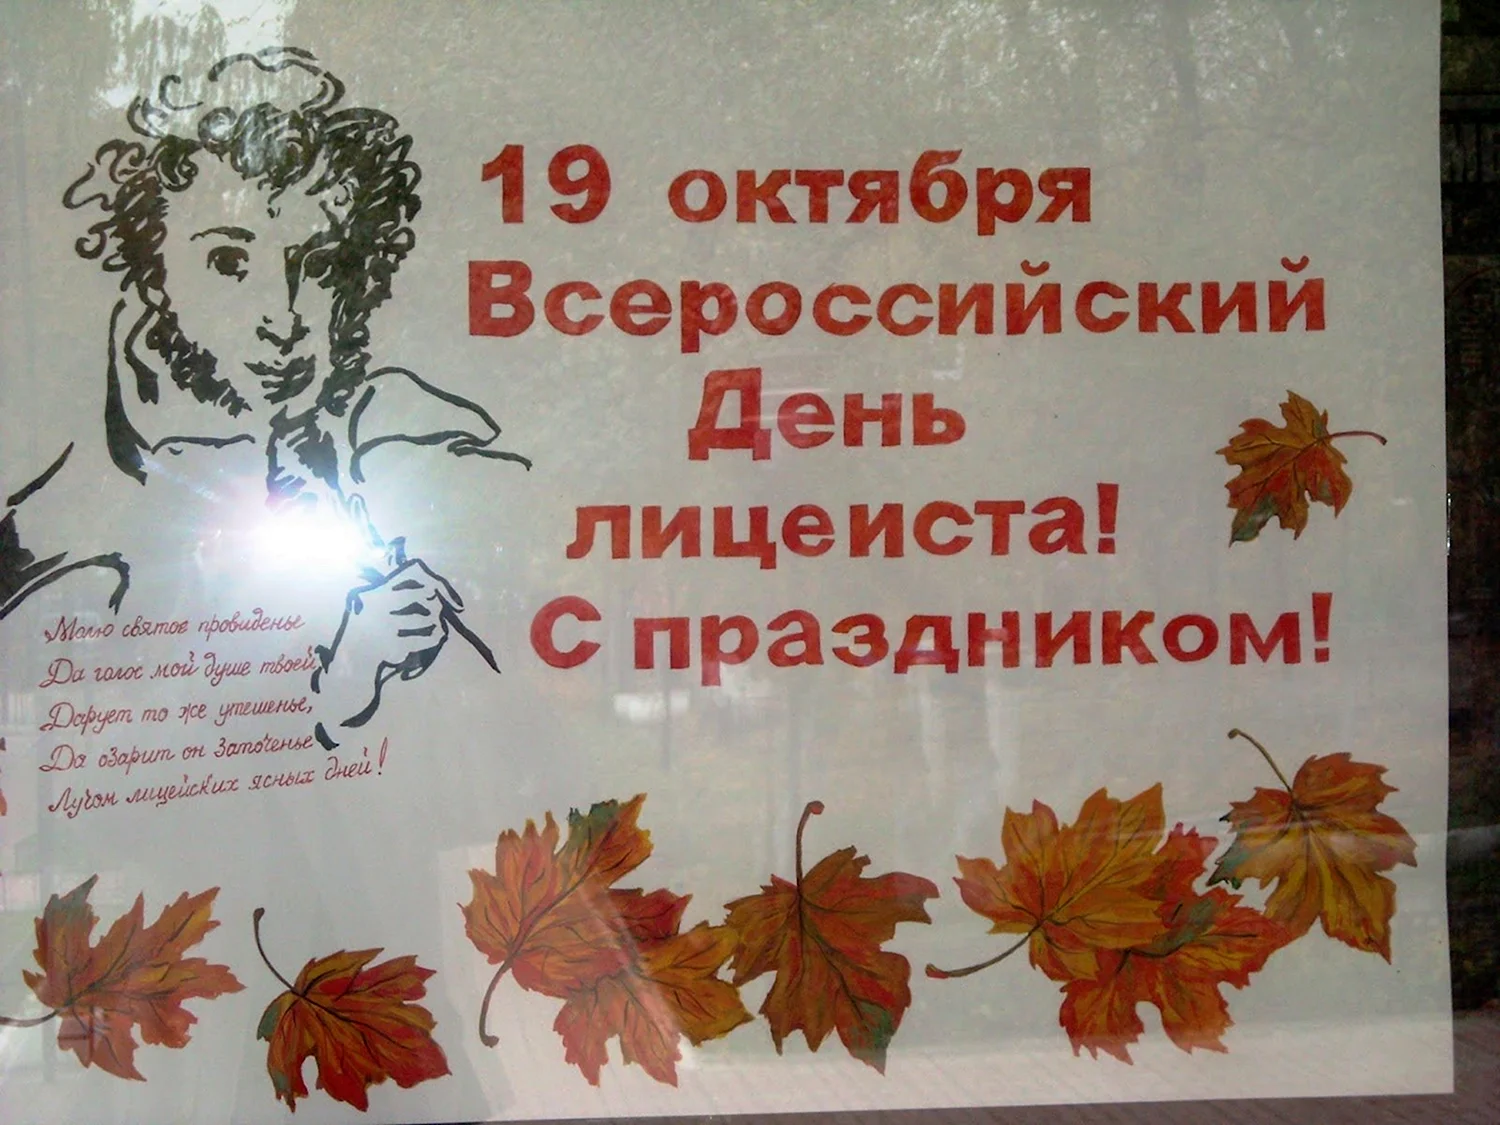 Всероссийский день лицеиста 19 октября